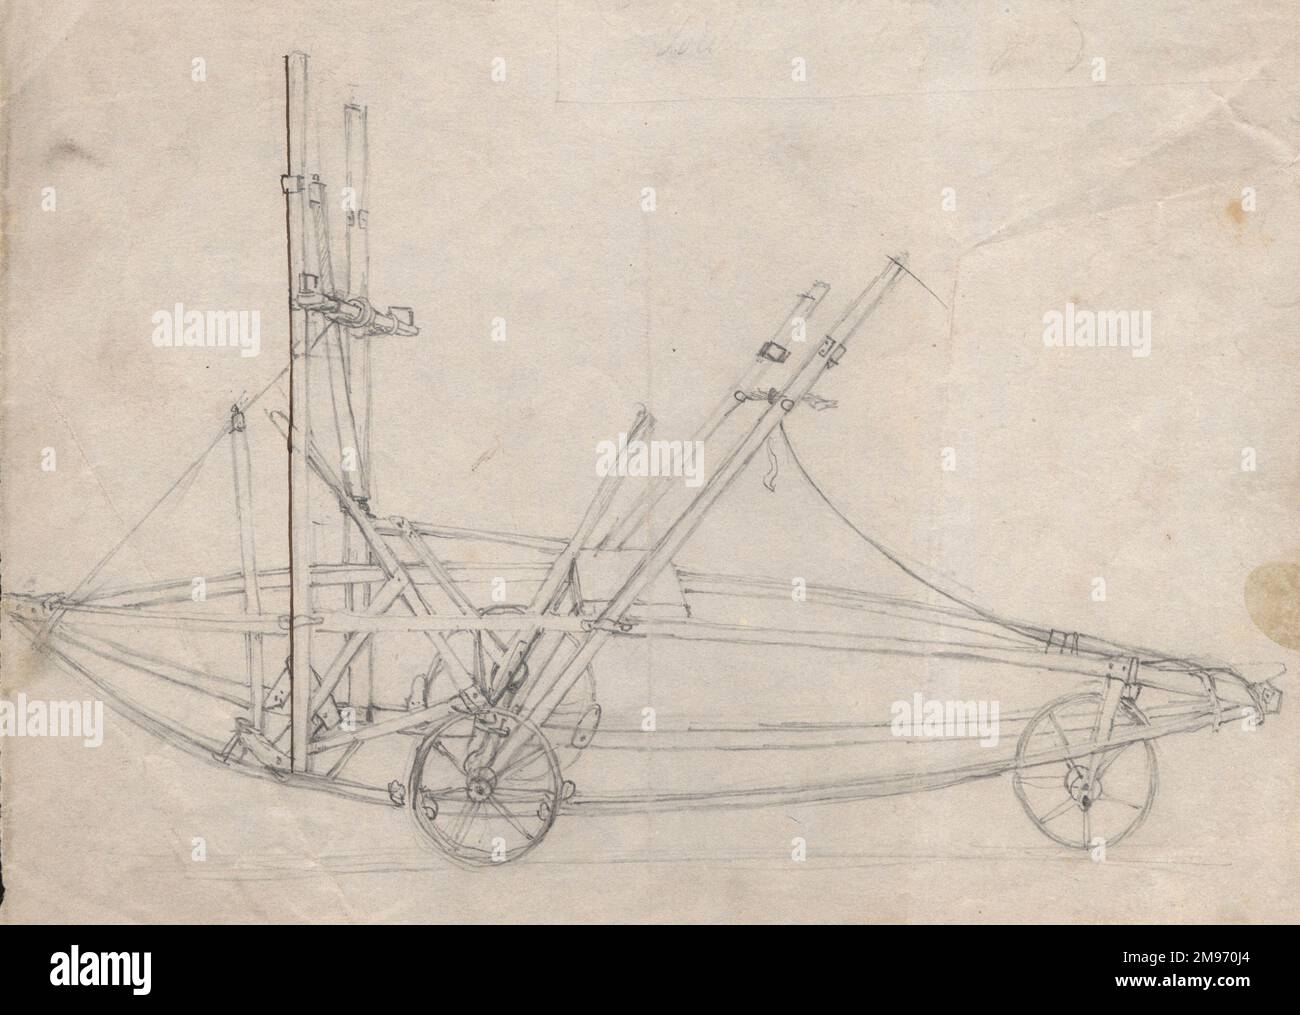 Sir George Cayleys Skizze eines Autos eines Manntransportflugzeugs, möglicherweise des Kutschers, zeigt die Hebel und Pleuel, Radbremsen usw. um 1853. Stockfoto